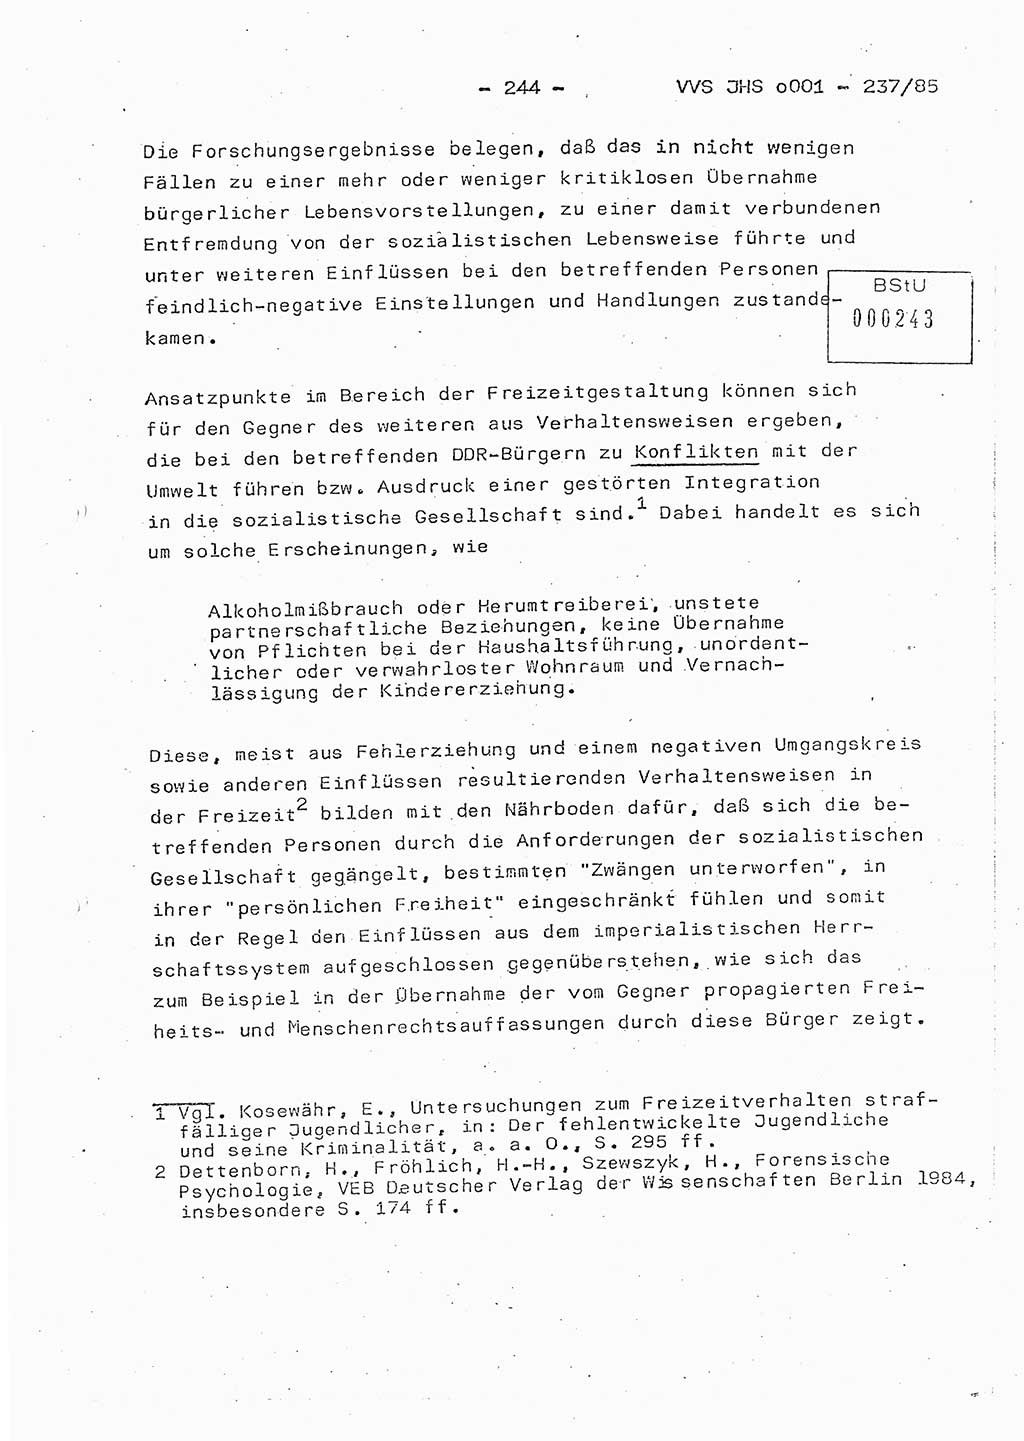 Dissertation Oberstleutnant Peter Jakulski (JHS), Oberstleutnat Christian Rudolph (HA Ⅸ), Major Horst Böttger (ZMD), Major Wolfgang Grüneberg (JHS), Major Albert Meutsch (JHS), Ministerium für Staatssicherheit (MfS) [Deutsche Demokratische Republik (DDR)], Juristische Hochschule (JHS), Vertrauliche Verschlußsache (VVS) o001-237/85, Potsdam 1985, Seite 244 (Diss. MfS DDR JHS VVS o001-237/85 1985, S. 244)